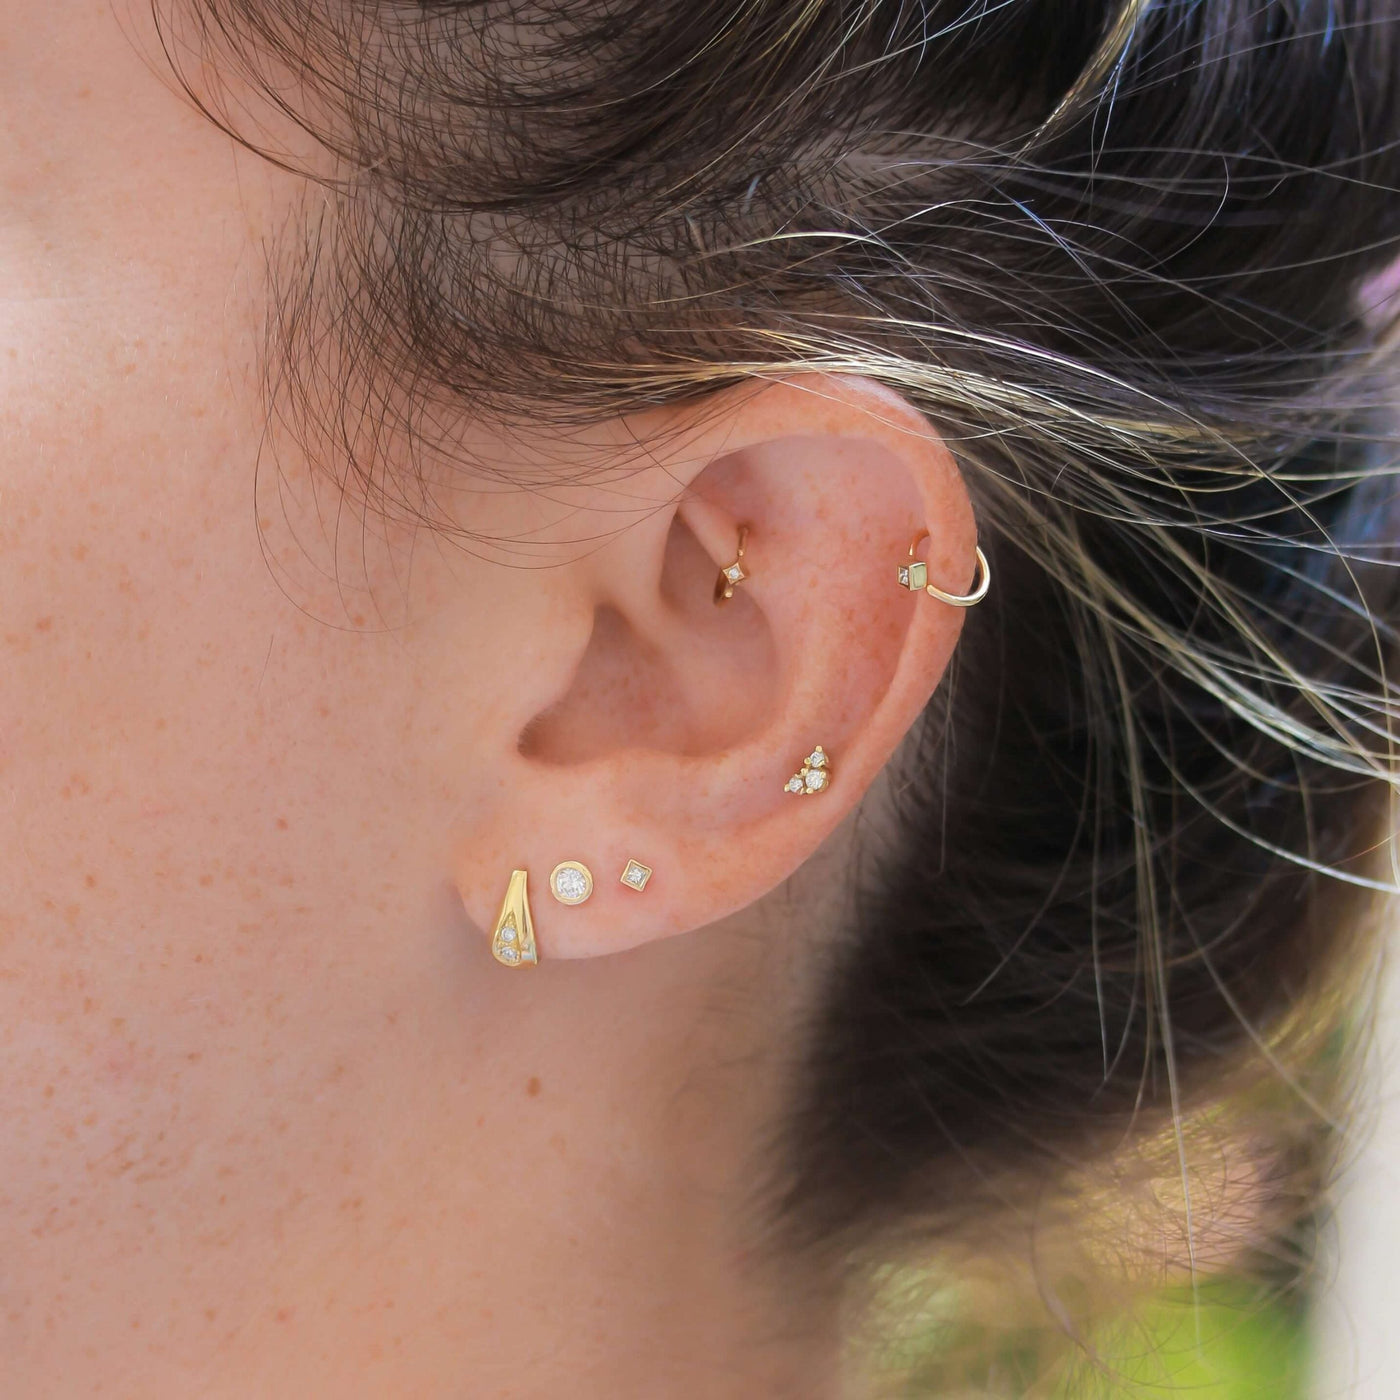 Small Drop Earring 14K Gold White Diamonds Earrings 